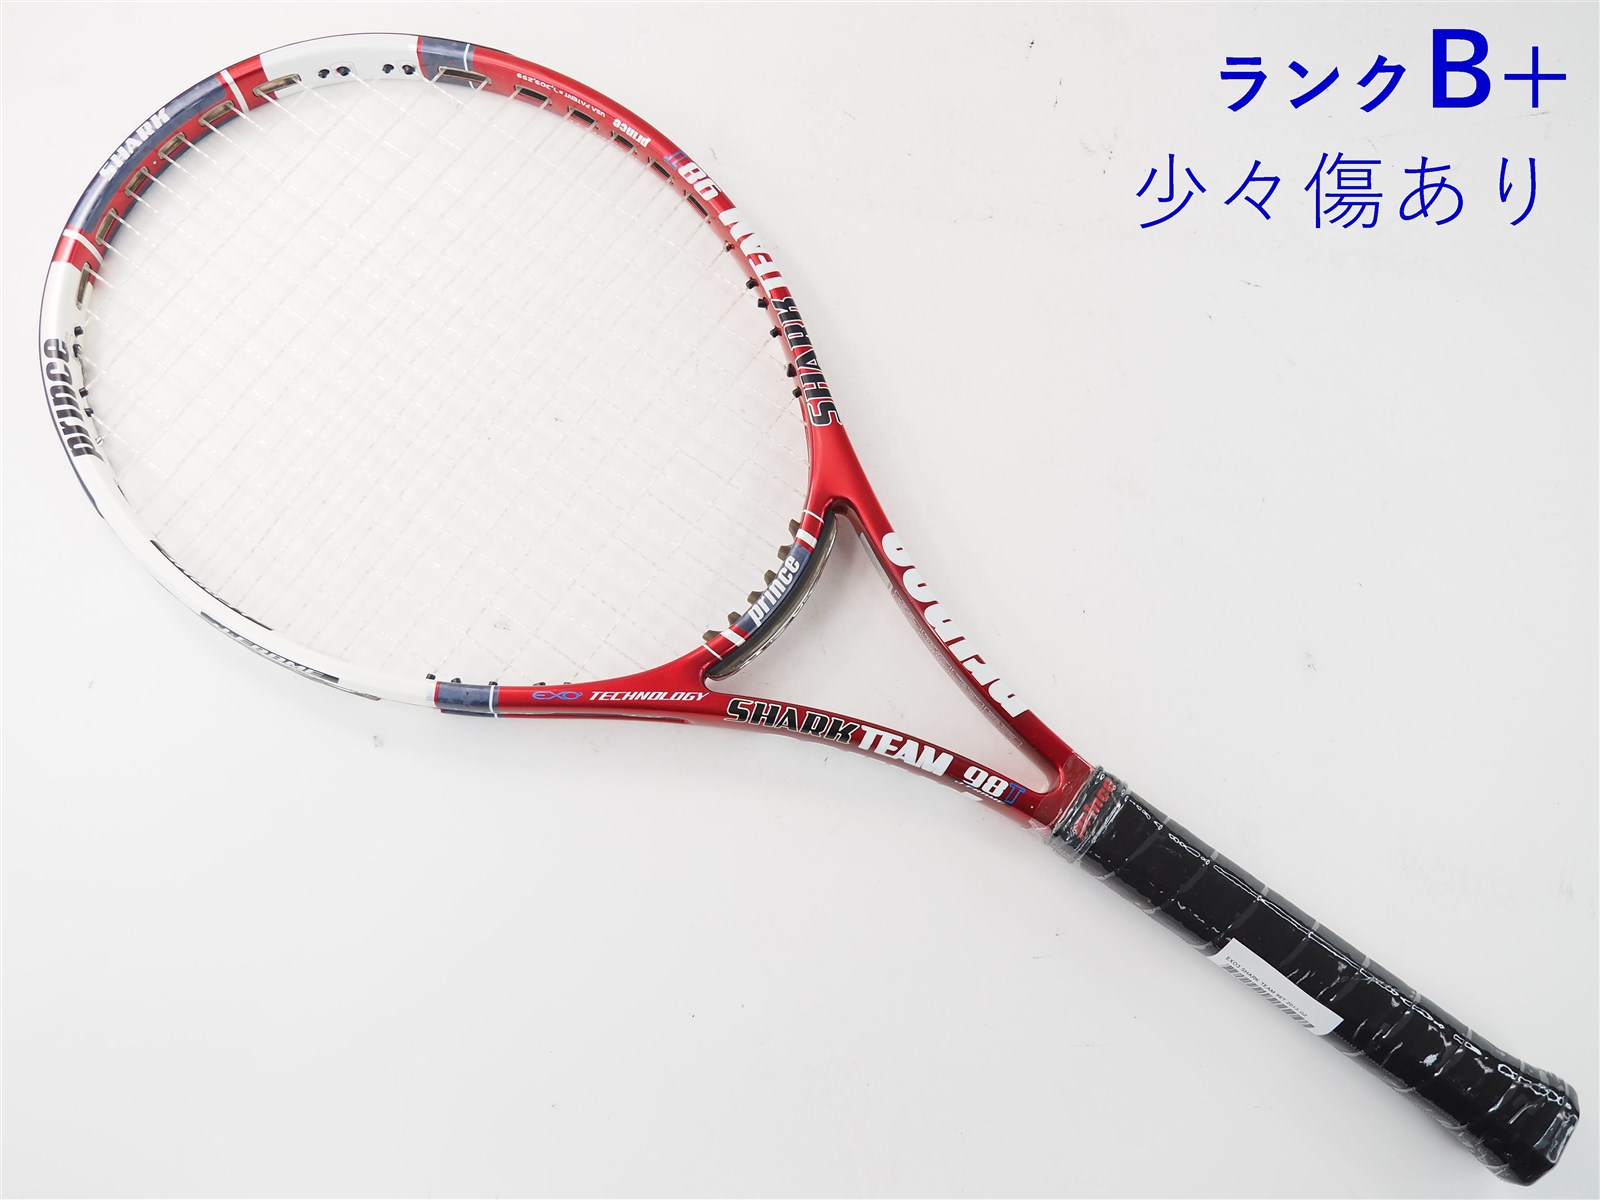 テニスラケット プリンス イーエックスオースリー シャーク チーム 98T 2013年モデル (G3)PRINCE EXO3 SHARK TEAM 98T 2013